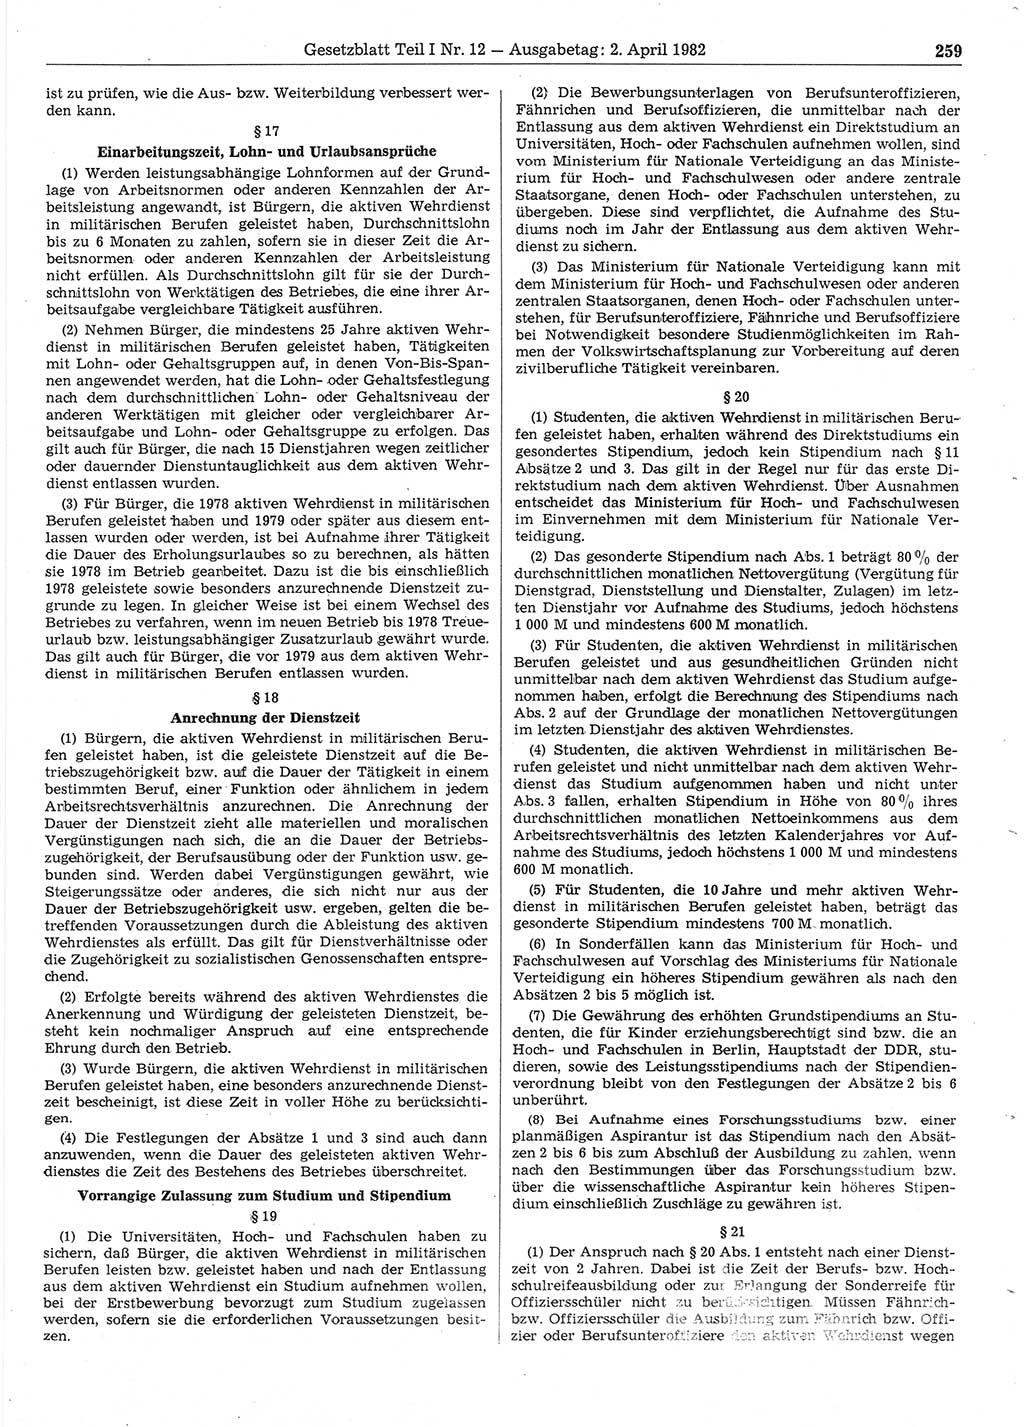 Gesetzblatt (GBl.) der Deutschen Demokratischen Republik (DDR) Teil Ⅰ 1982, Seite 259 (GBl. DDR Ⅰ 1982, S. 259)